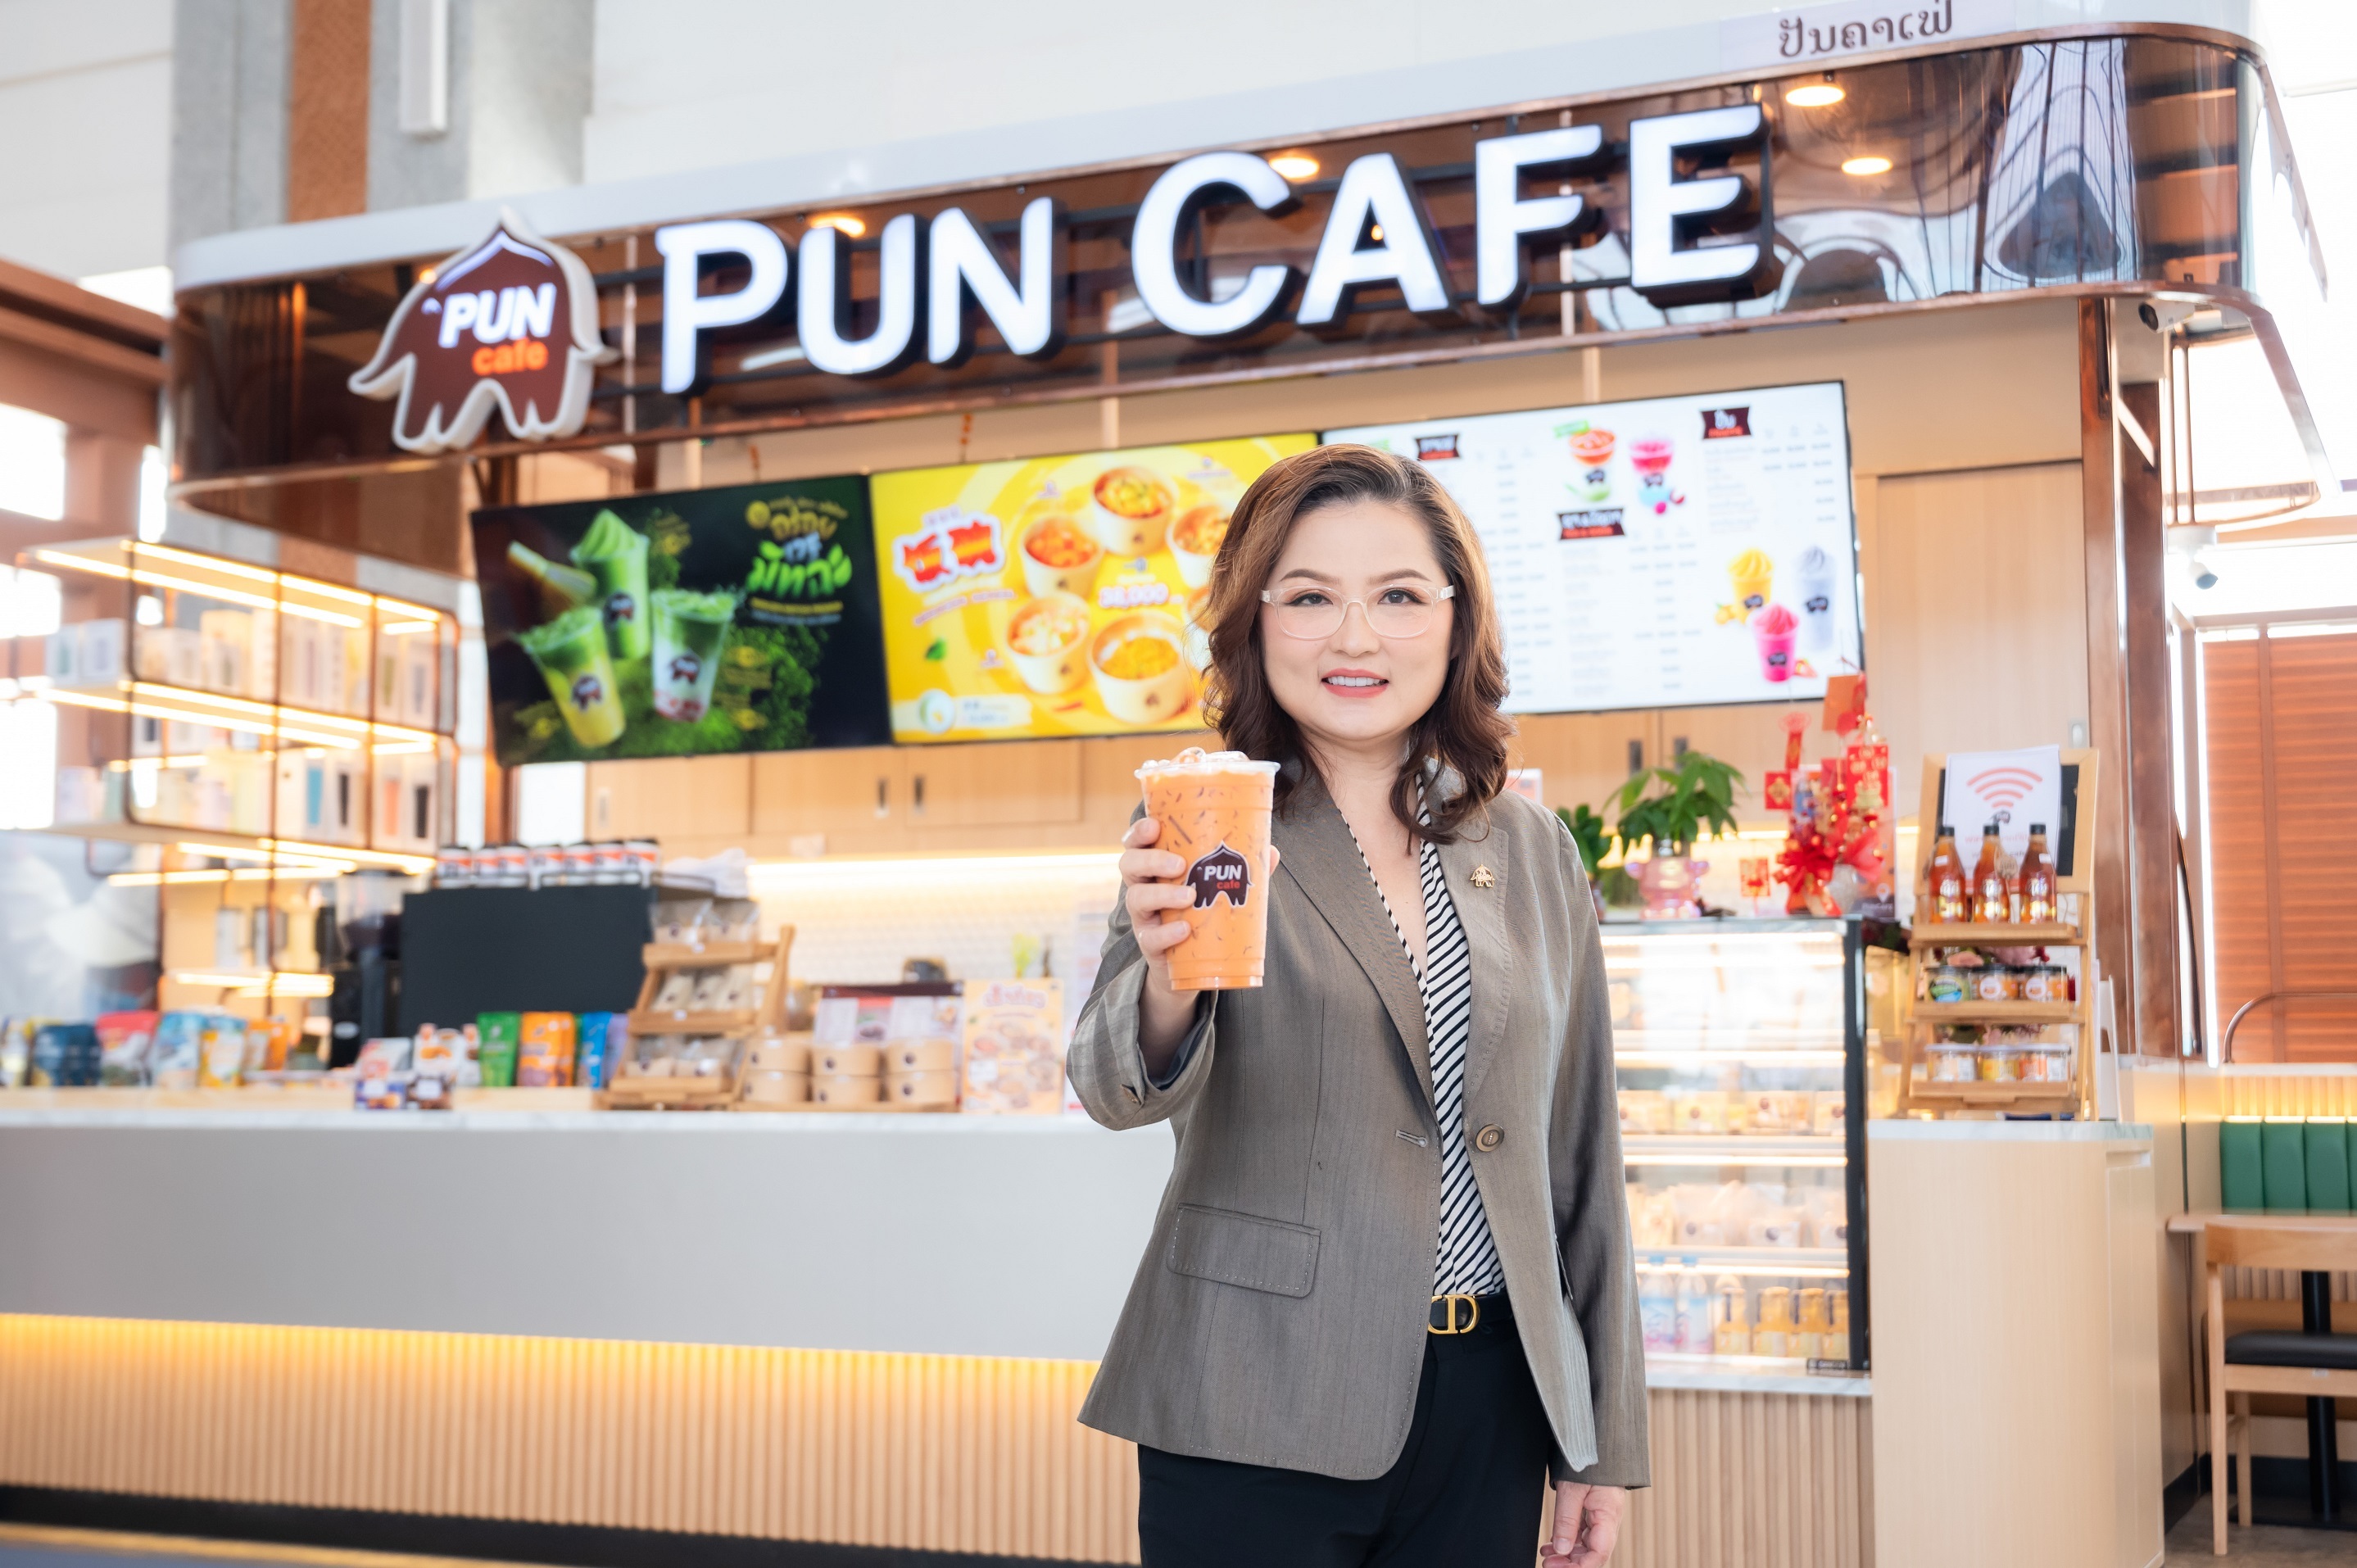 กาแฟพันธุ์ไทย รุก clmv สยายปีกบุกตลาดอาเซียน เปิดตัว “ปันคาเฟ่” แห่งแรกใน สปป.ลาว